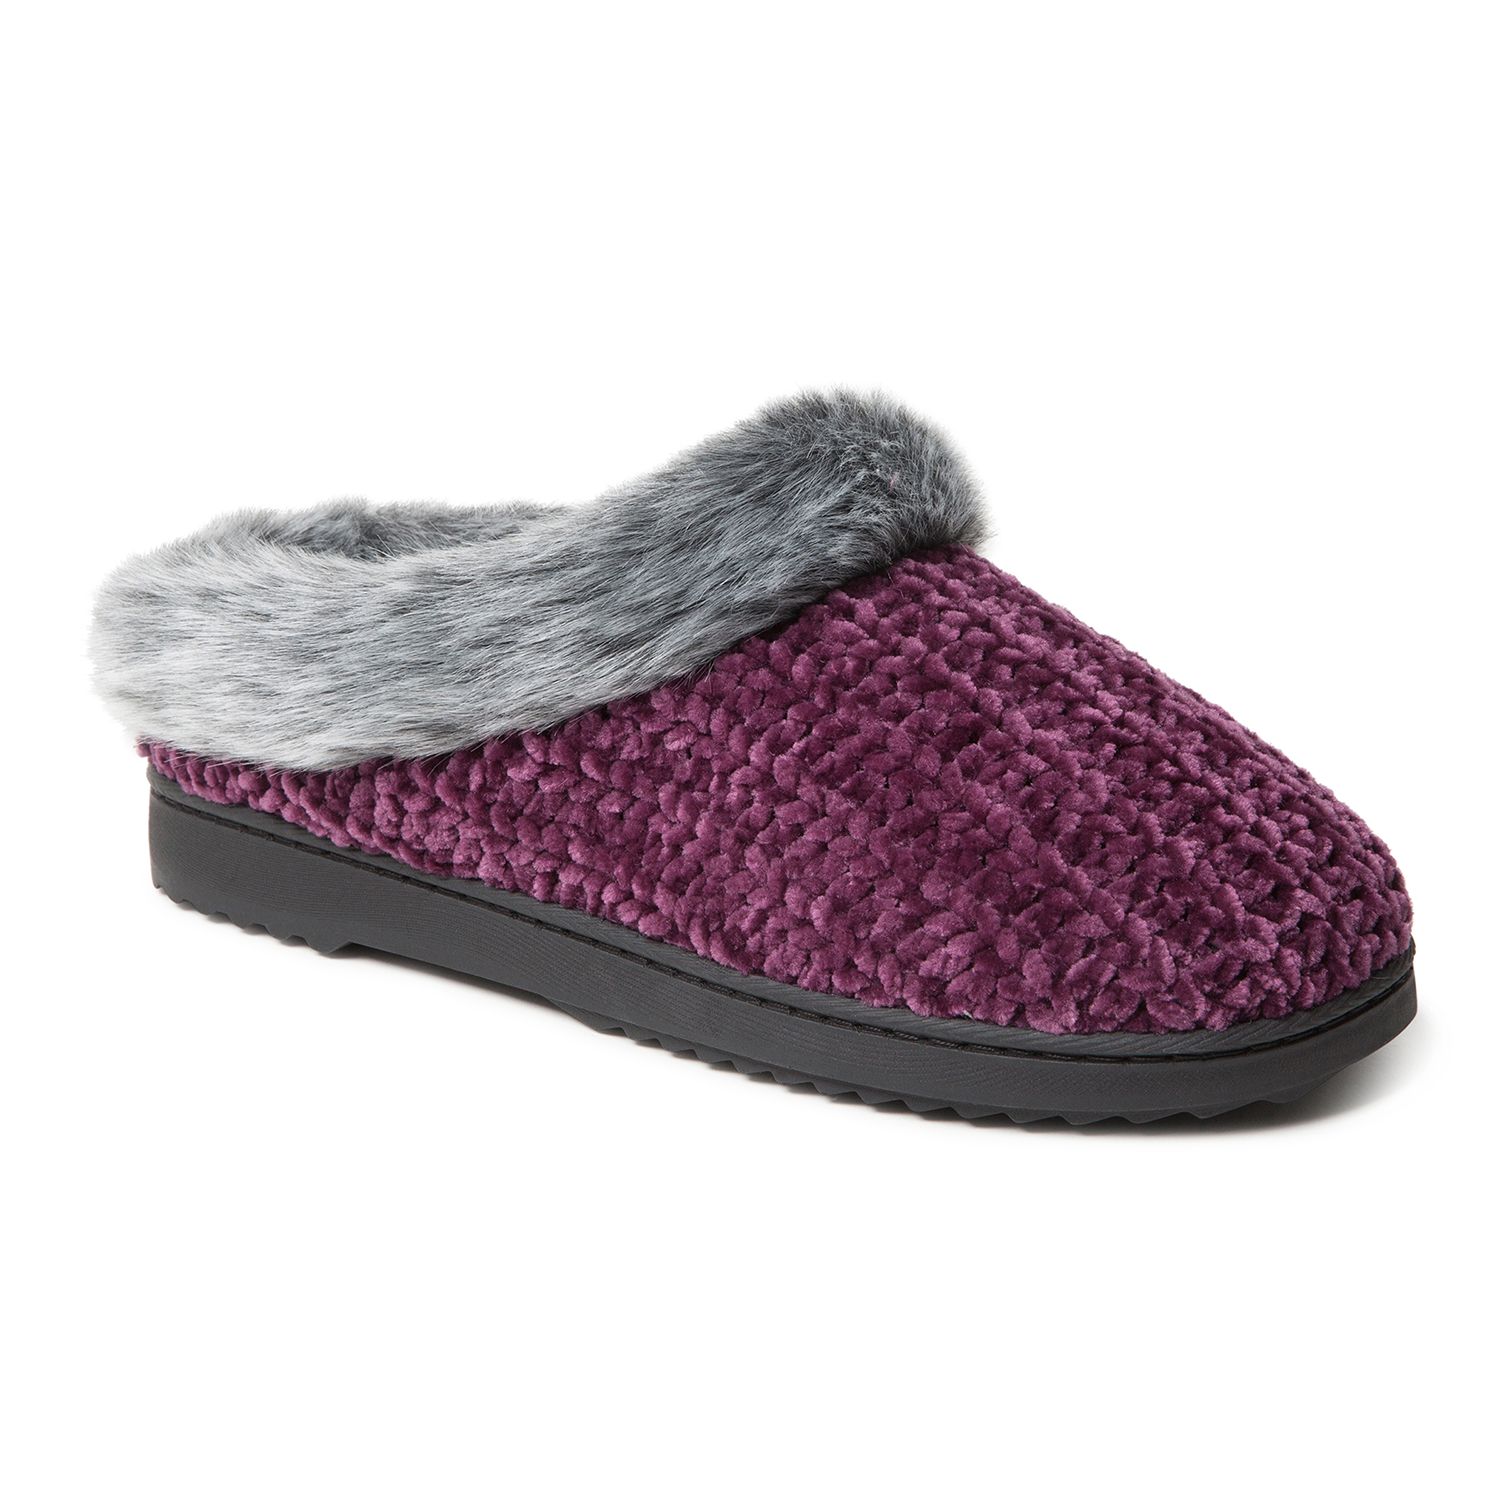 women's dearfoams chenille clog slippers